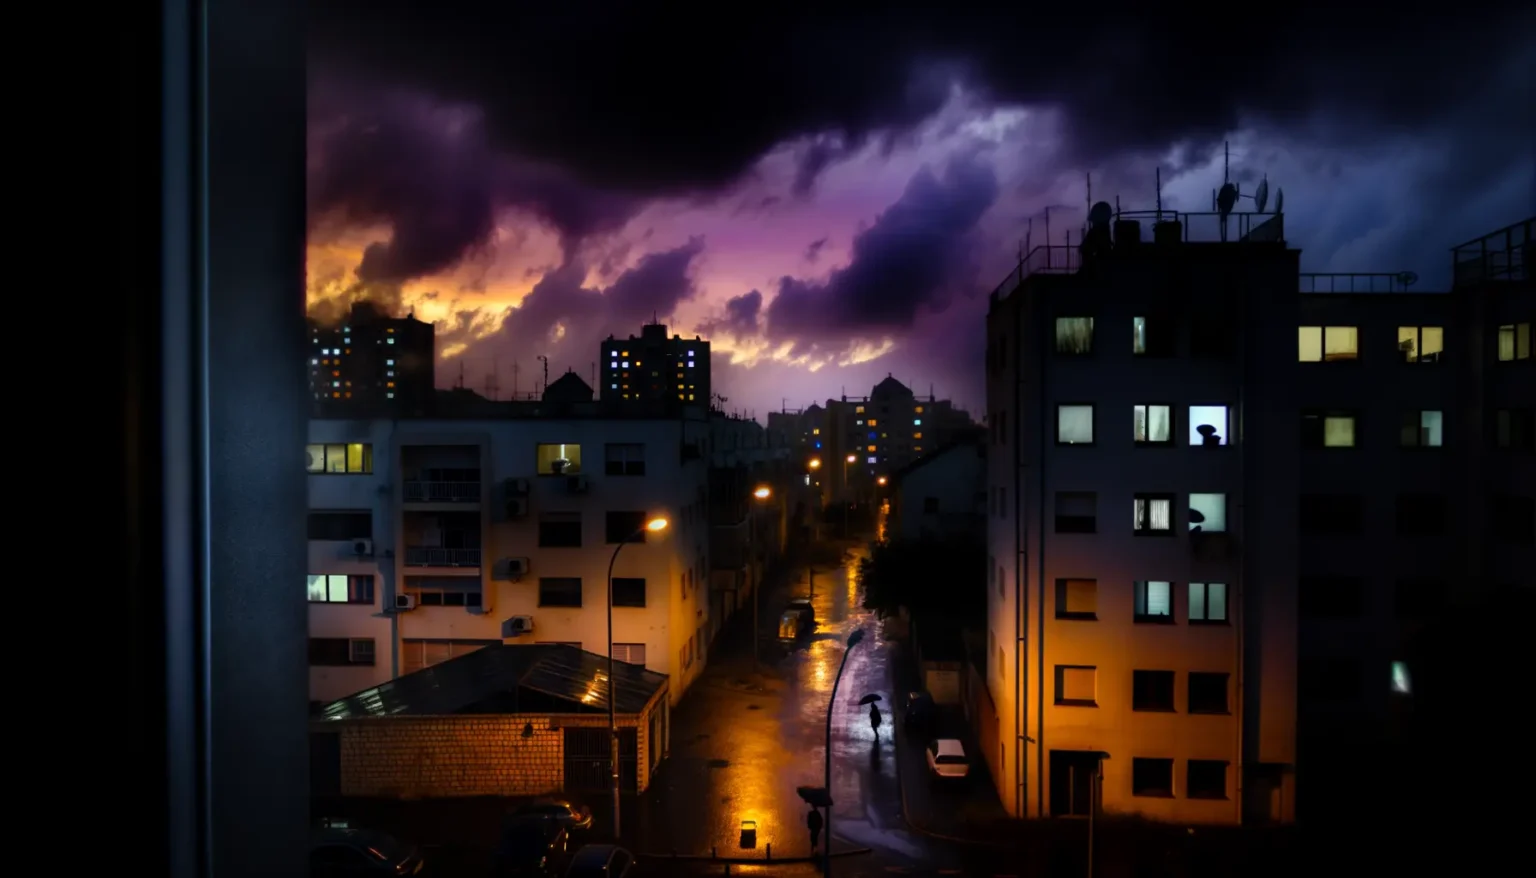 Blick auf eine Straße in der Dämmerung mit beleuchteten Straßenlaternen, die zwischen mehrstöckigen Wohngebäuden verläuft. Der Himmel zeigt eine dramatische Szenerie mit dunklen Wolken und einem orangeroten Schimmer, der durch sie hindurch scheint. Eine Person mit Regenschirm ist im schwachen Licht einer Straßenlaterne zu erkennen.